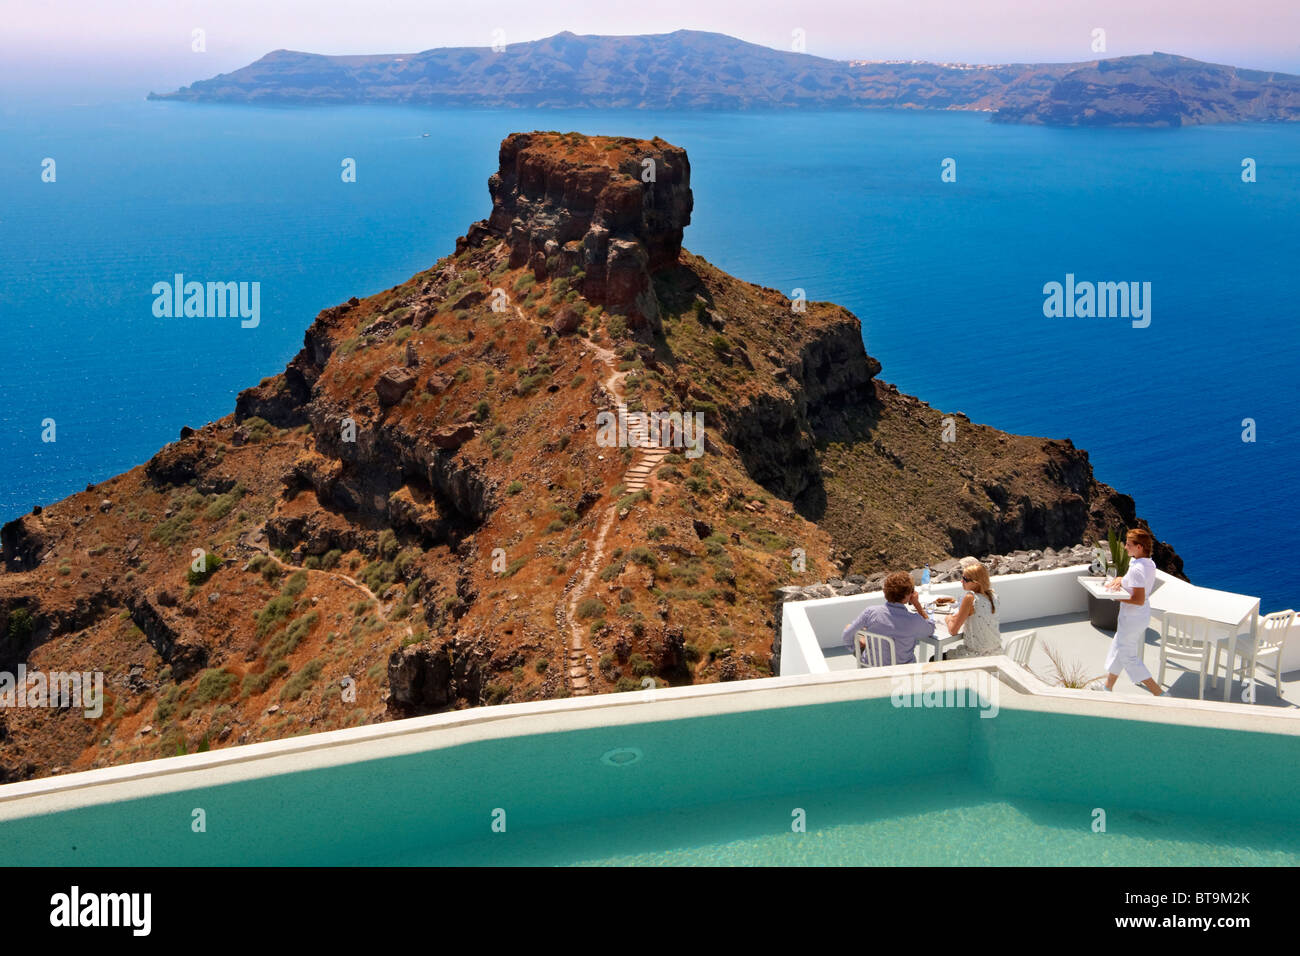 Les touristes sur une terrasse de l'hôtel donnant sur le bouchon volcanique d'Imerovigli, Santorini, Grèce. Banque D'Images